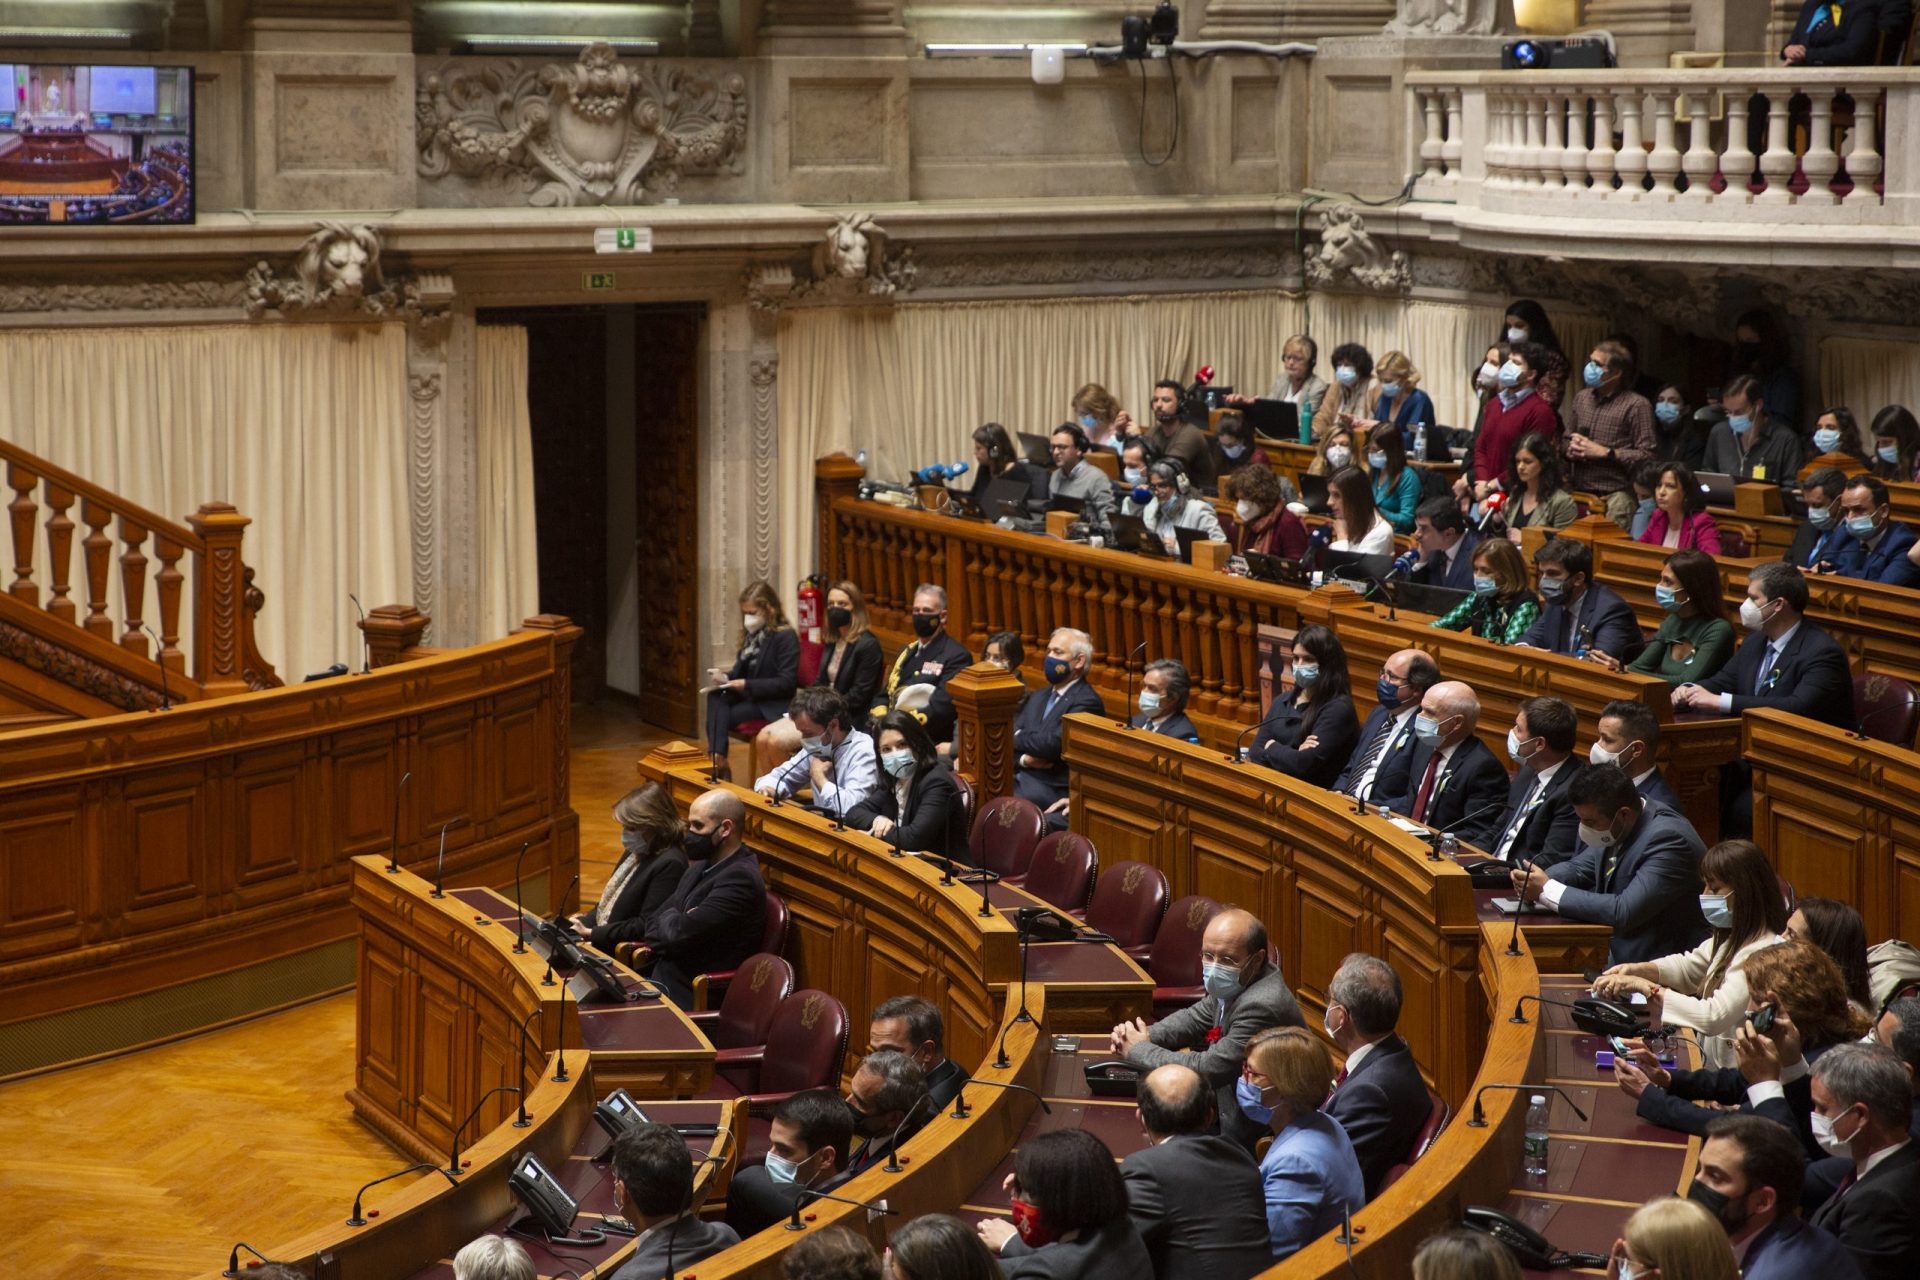 Regime jurídico para estrangeiros em Portugal aprovado pelo Parlamento. PSD abstém-se e Chega nem vota